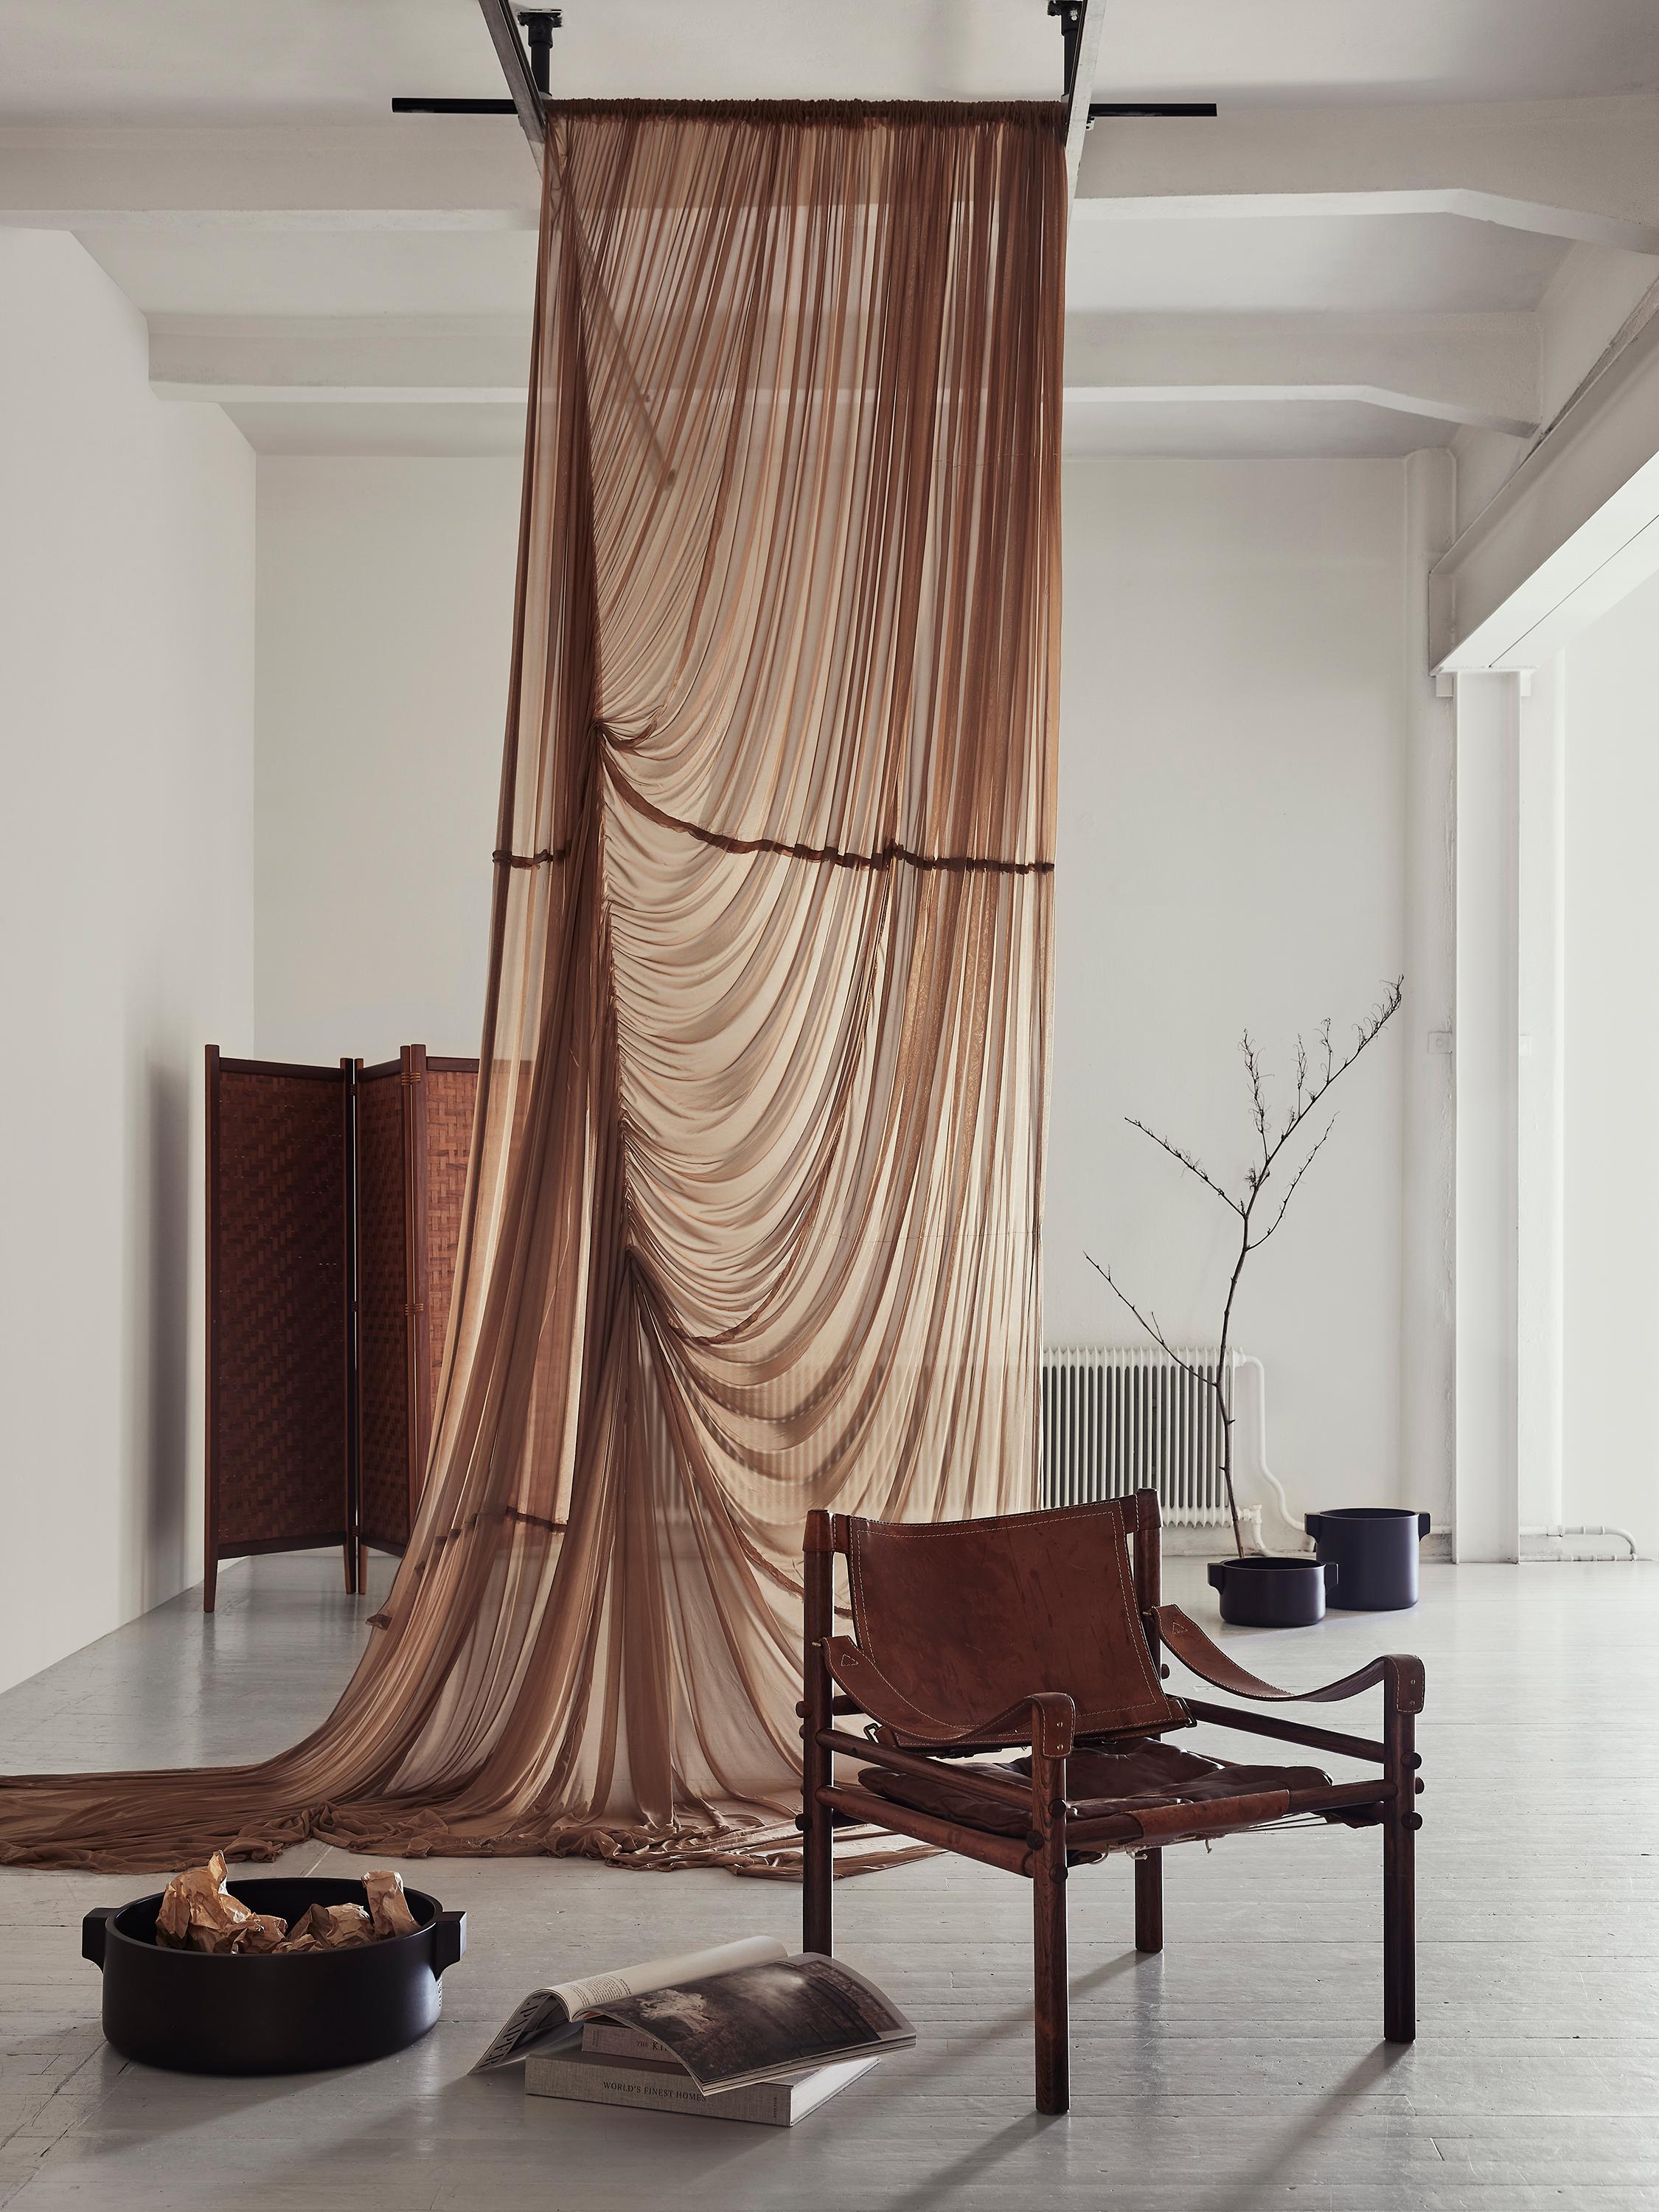 Le fauteuil Sirocco, conçu par Arne Norells, est un meuble intemporel et luxueux qui allie harmonieusement confort, style et savoir-faire. Véritable icône du design scandinave, il reflète l'engagement de Norells en faveur des matériaux de qualité et